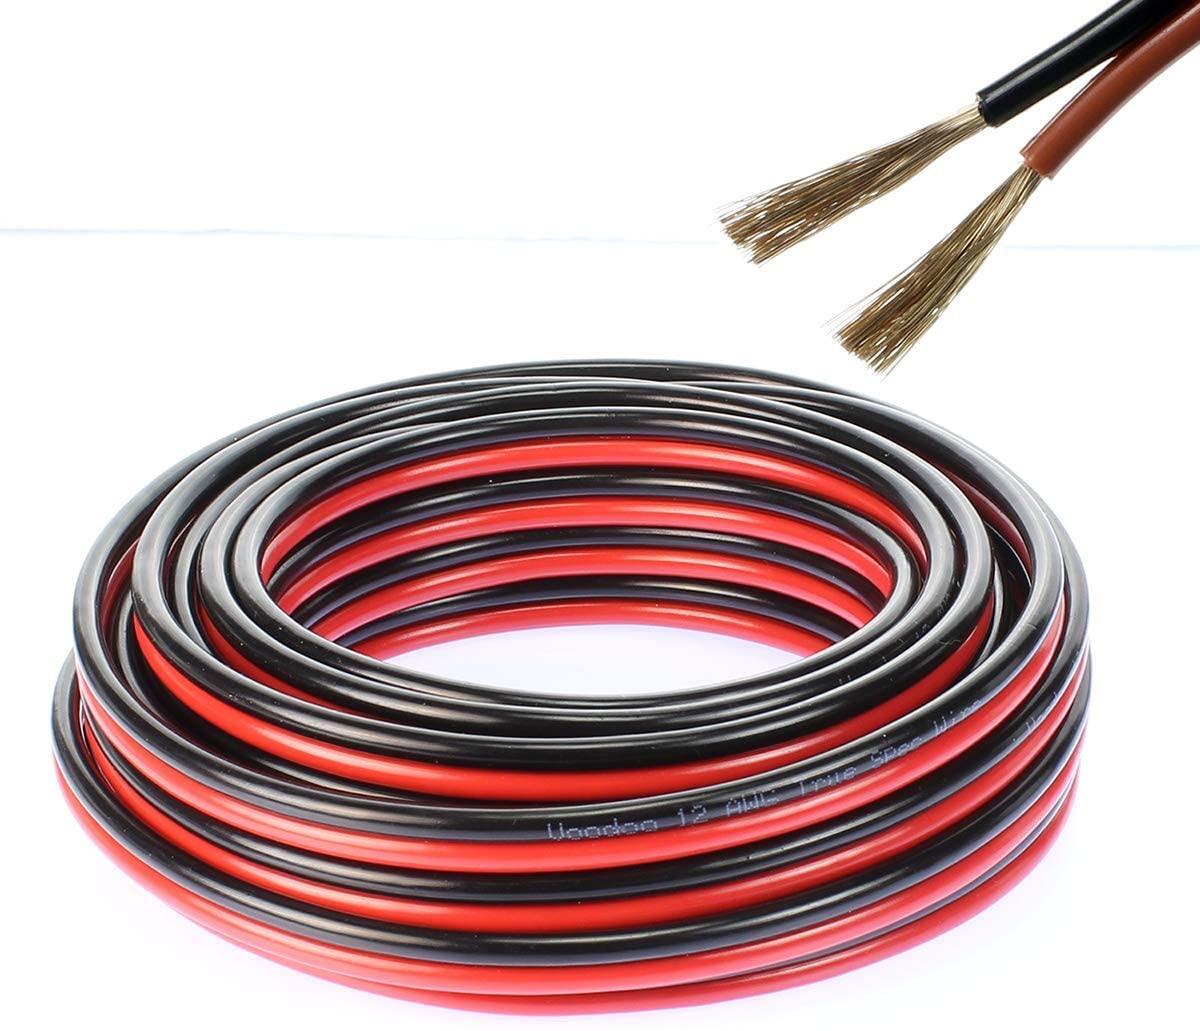 สายไฟ แดงดำ 17awg (1 mm²) สายลำโพง สายไฟคู่ สายคู่ electrical wire cable เครื่องเสียง รถยนต์ car aud สี ชุด 10 เมตร สี ชุด 10 เมตร